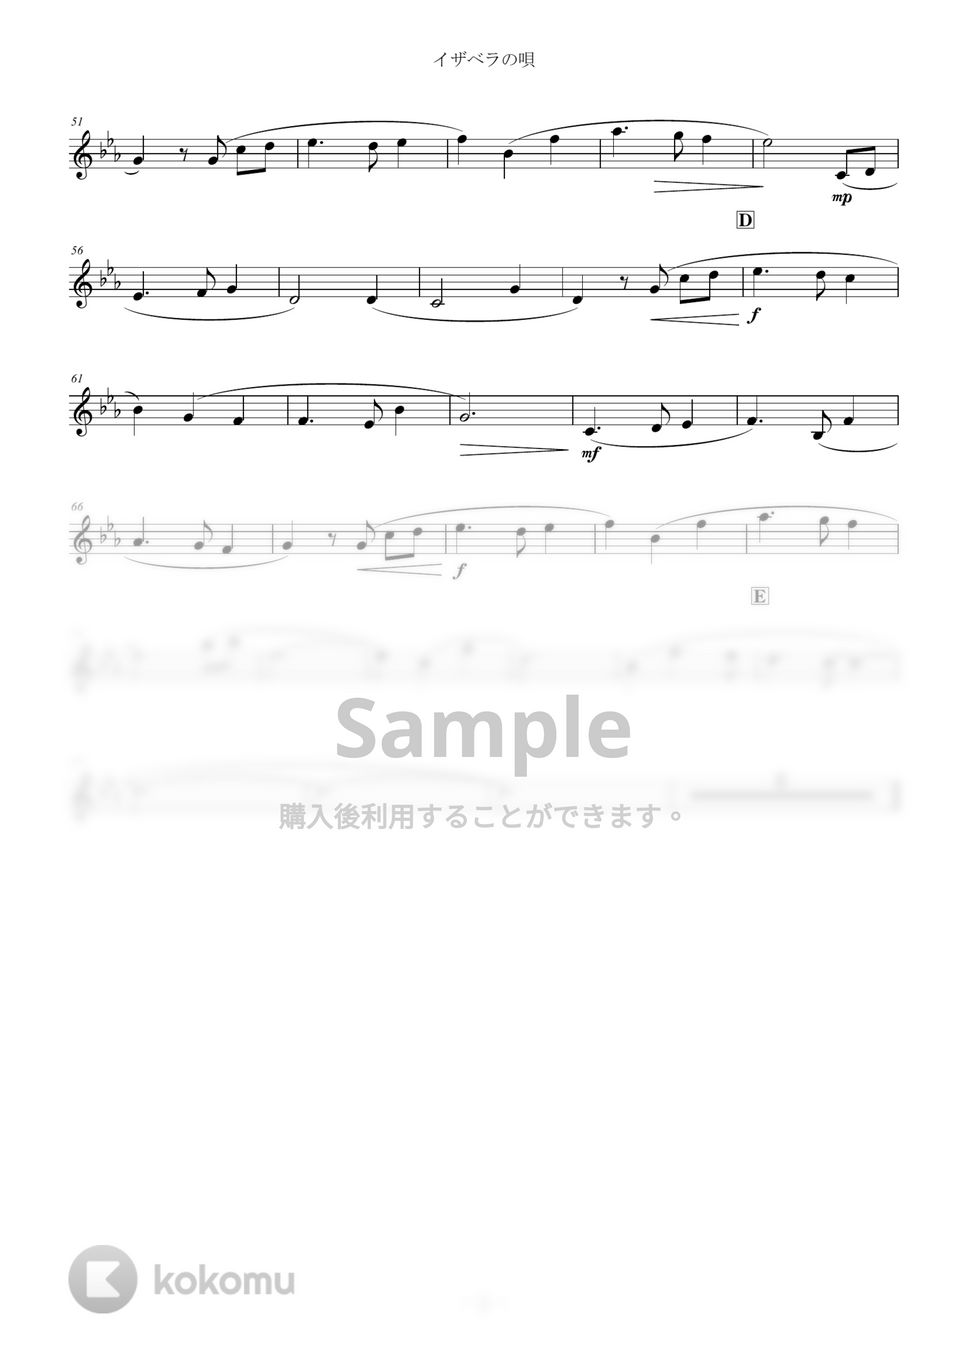 約束のネバーランド - イザベラの唄 (inB♭) by y.shiori